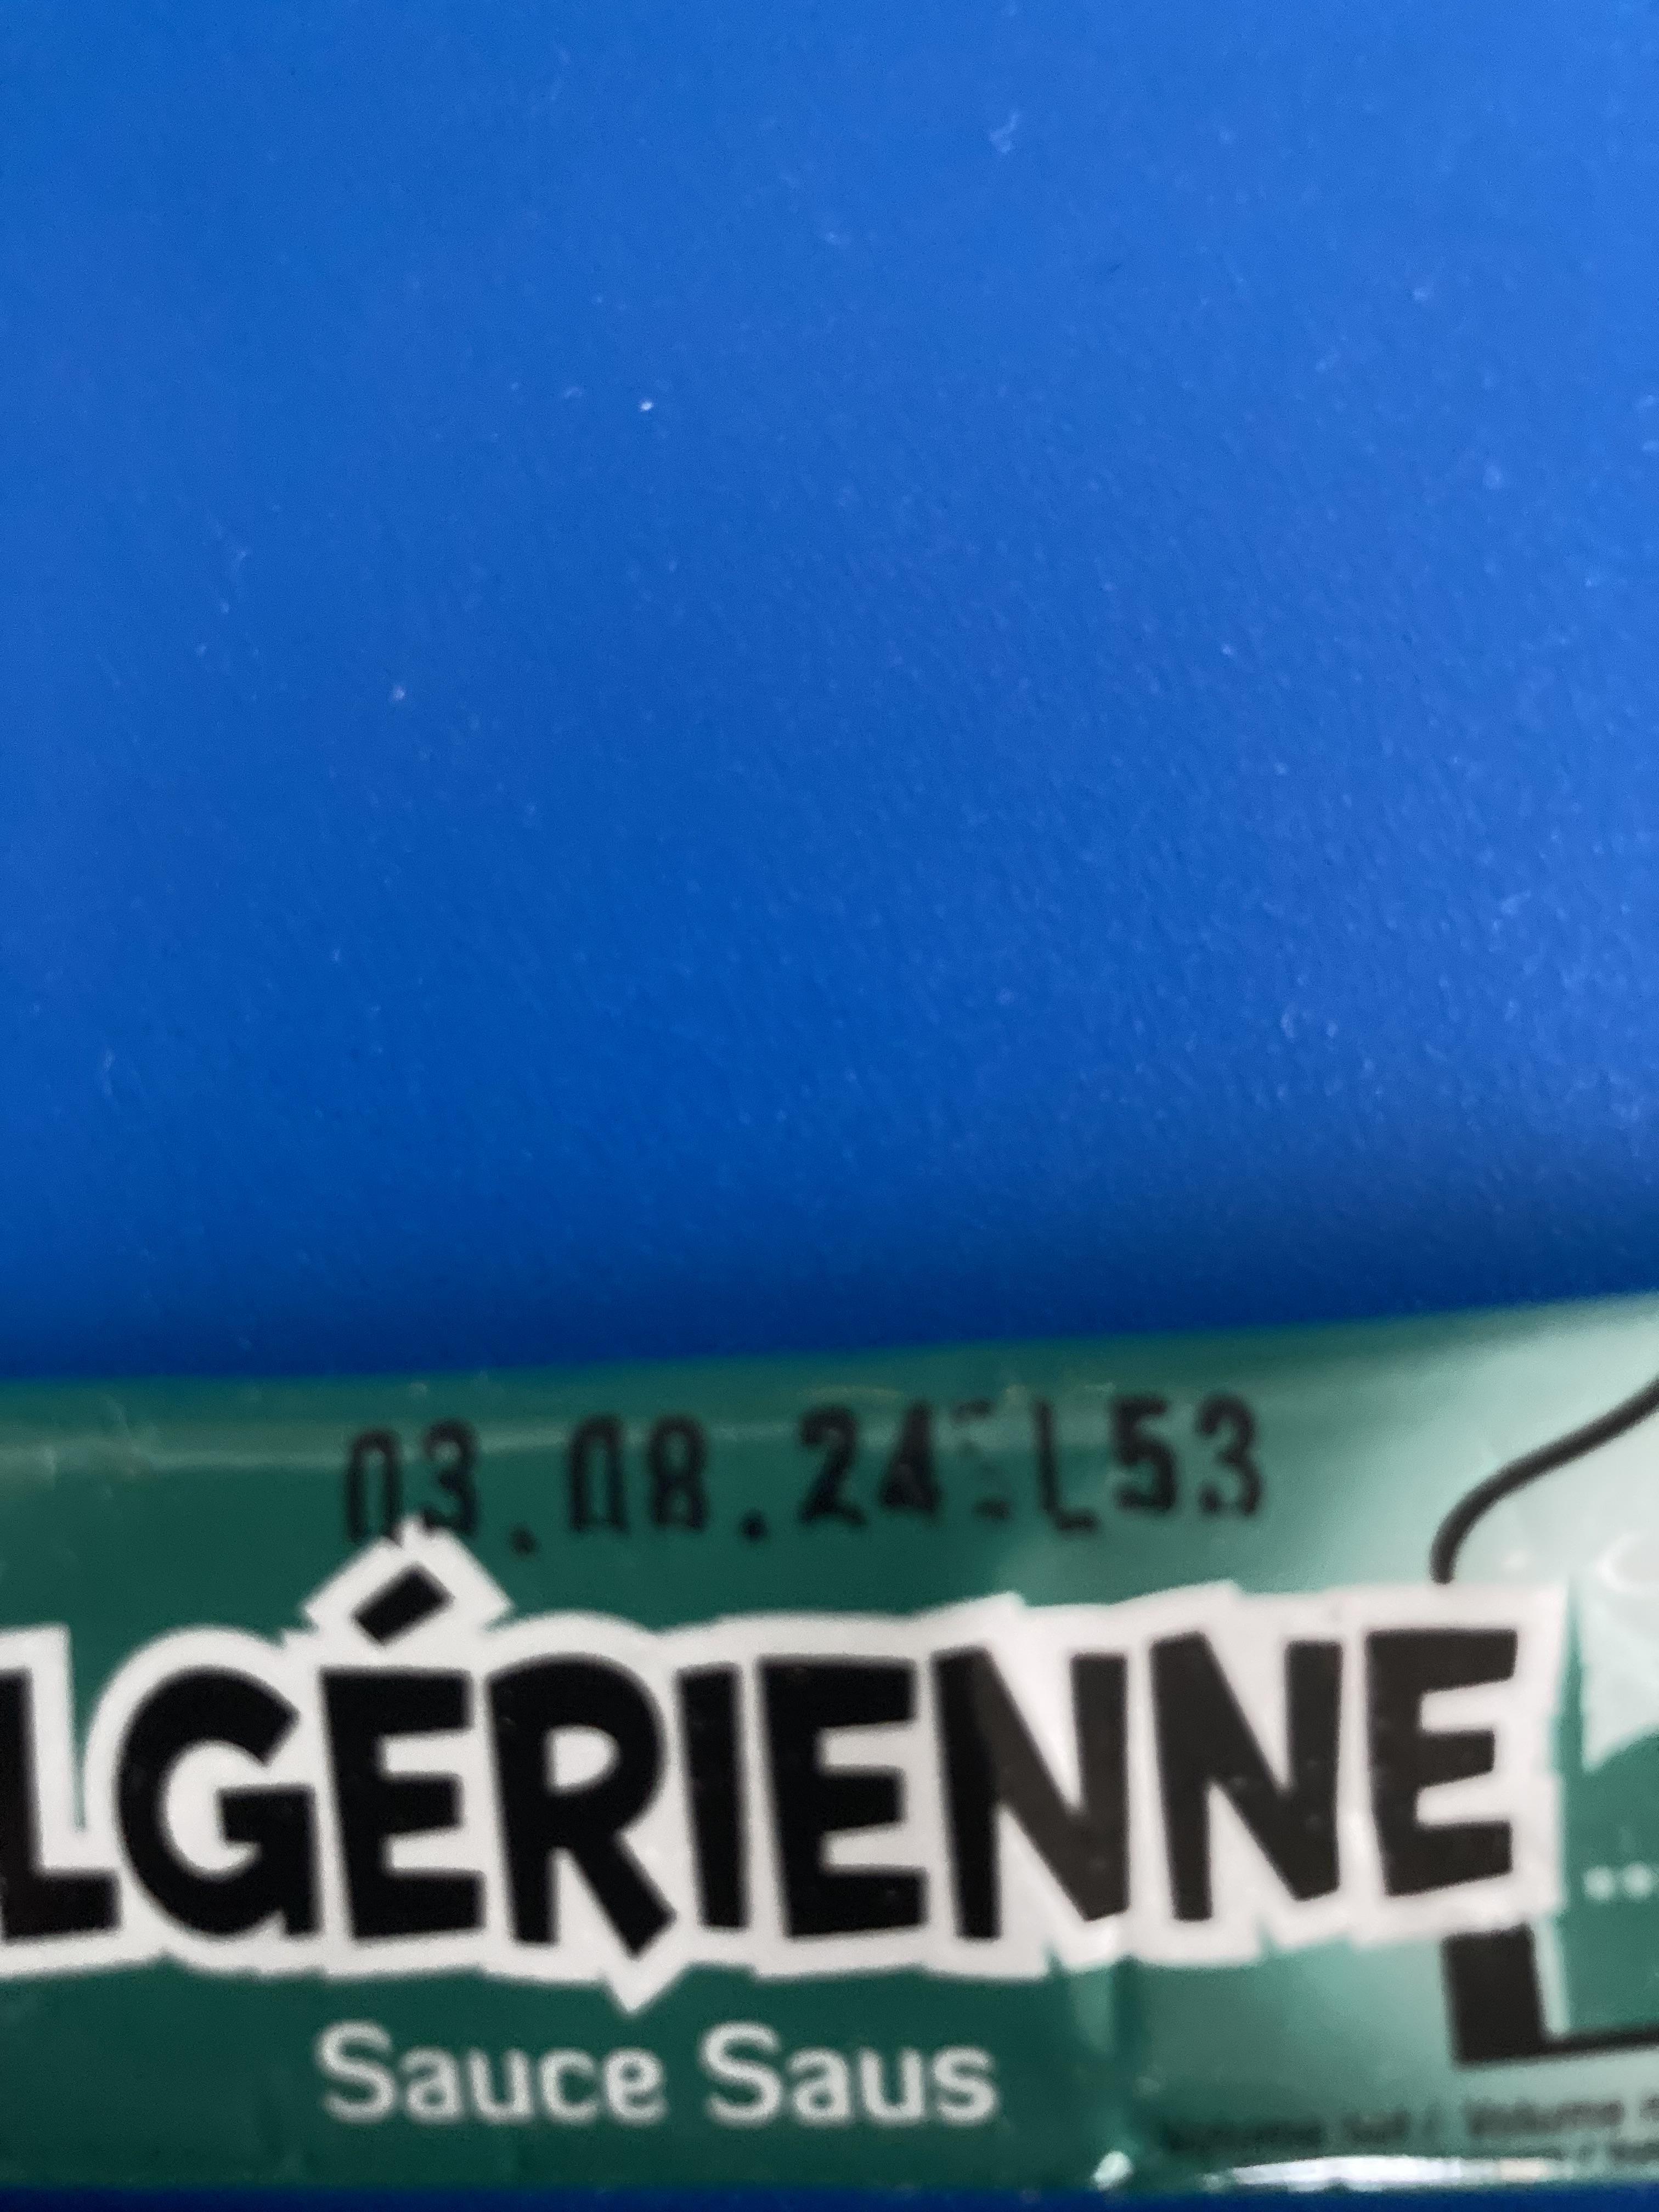 troc de troc donne deux dosettes de sauce algérienne image 1